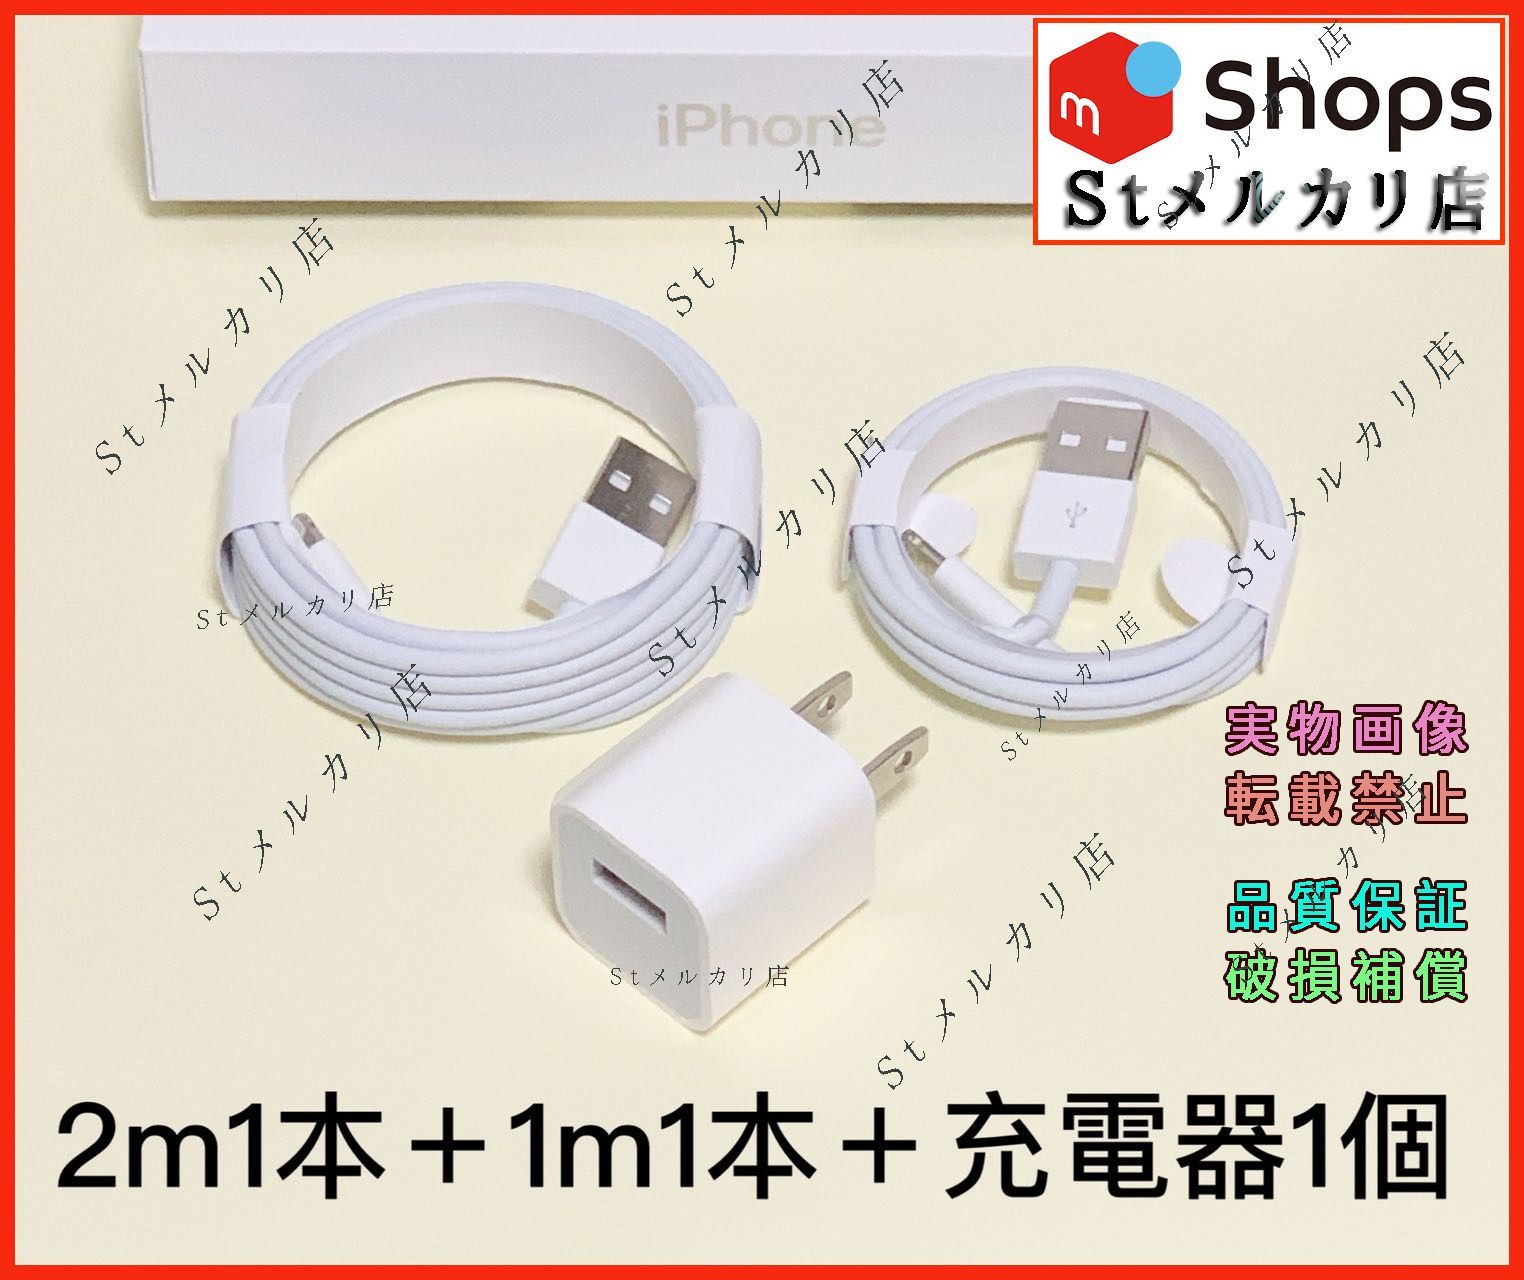 1本2m iPhone 充電器 Apple純正品質 充電ケーブル 新(5Oi1 - スマホ